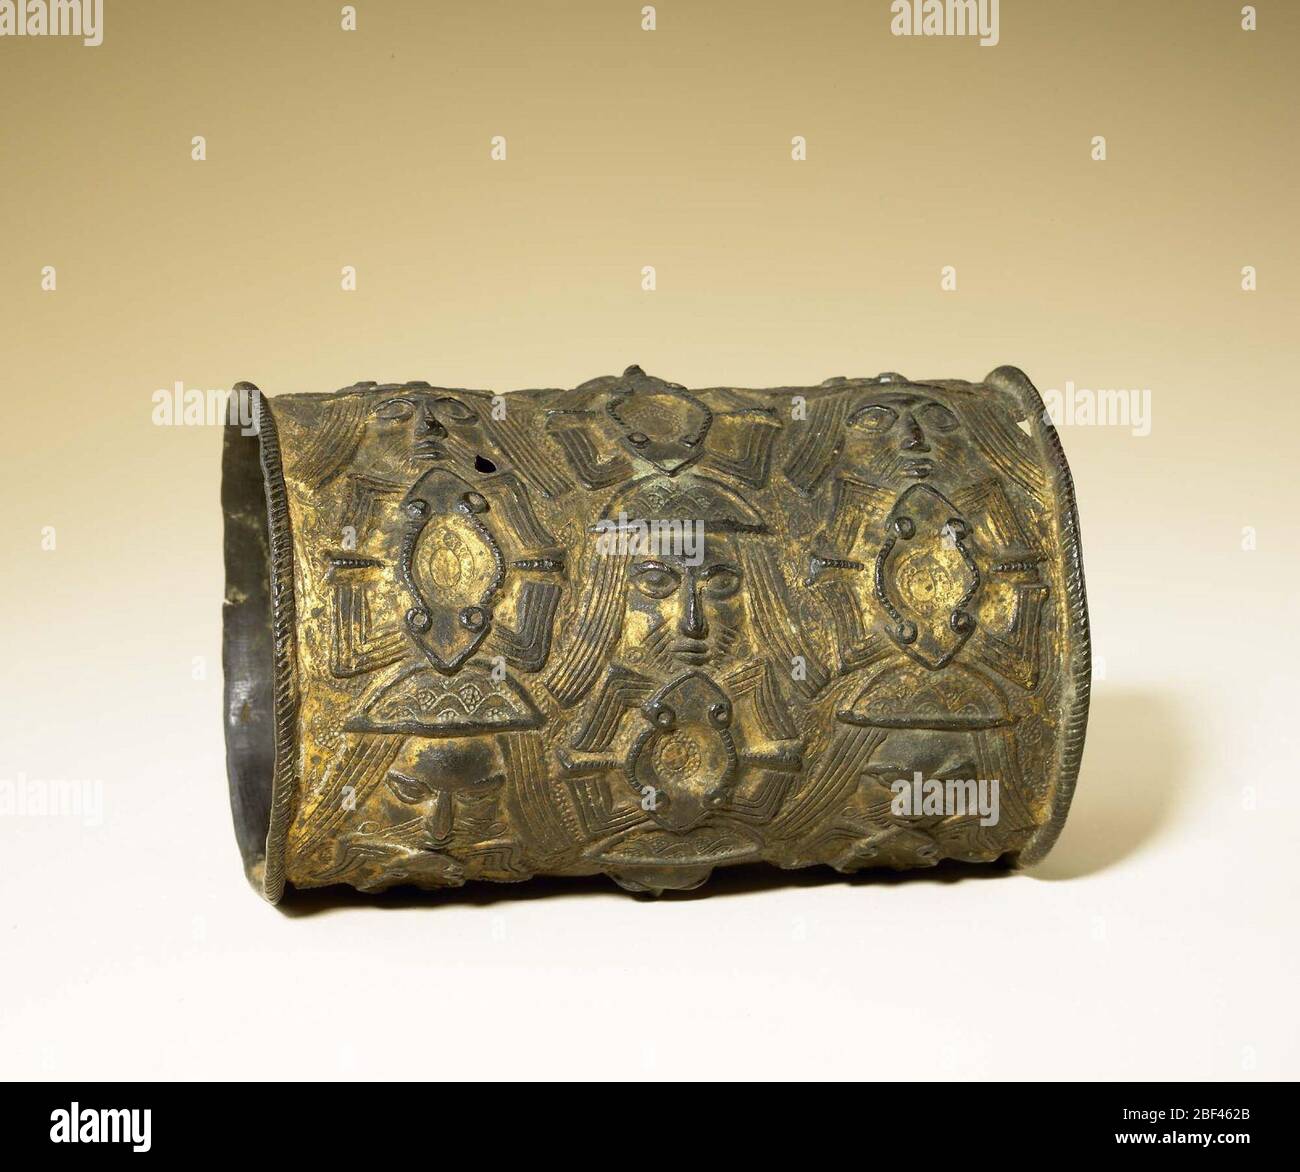 Benin kingdom court style; Nigeria; 17th-18th century; Copper alloy, gilt traces; H x Dia: 13.3 x 9.4 cm (5 1/4 x 3 11/16 in.) Stock Photo